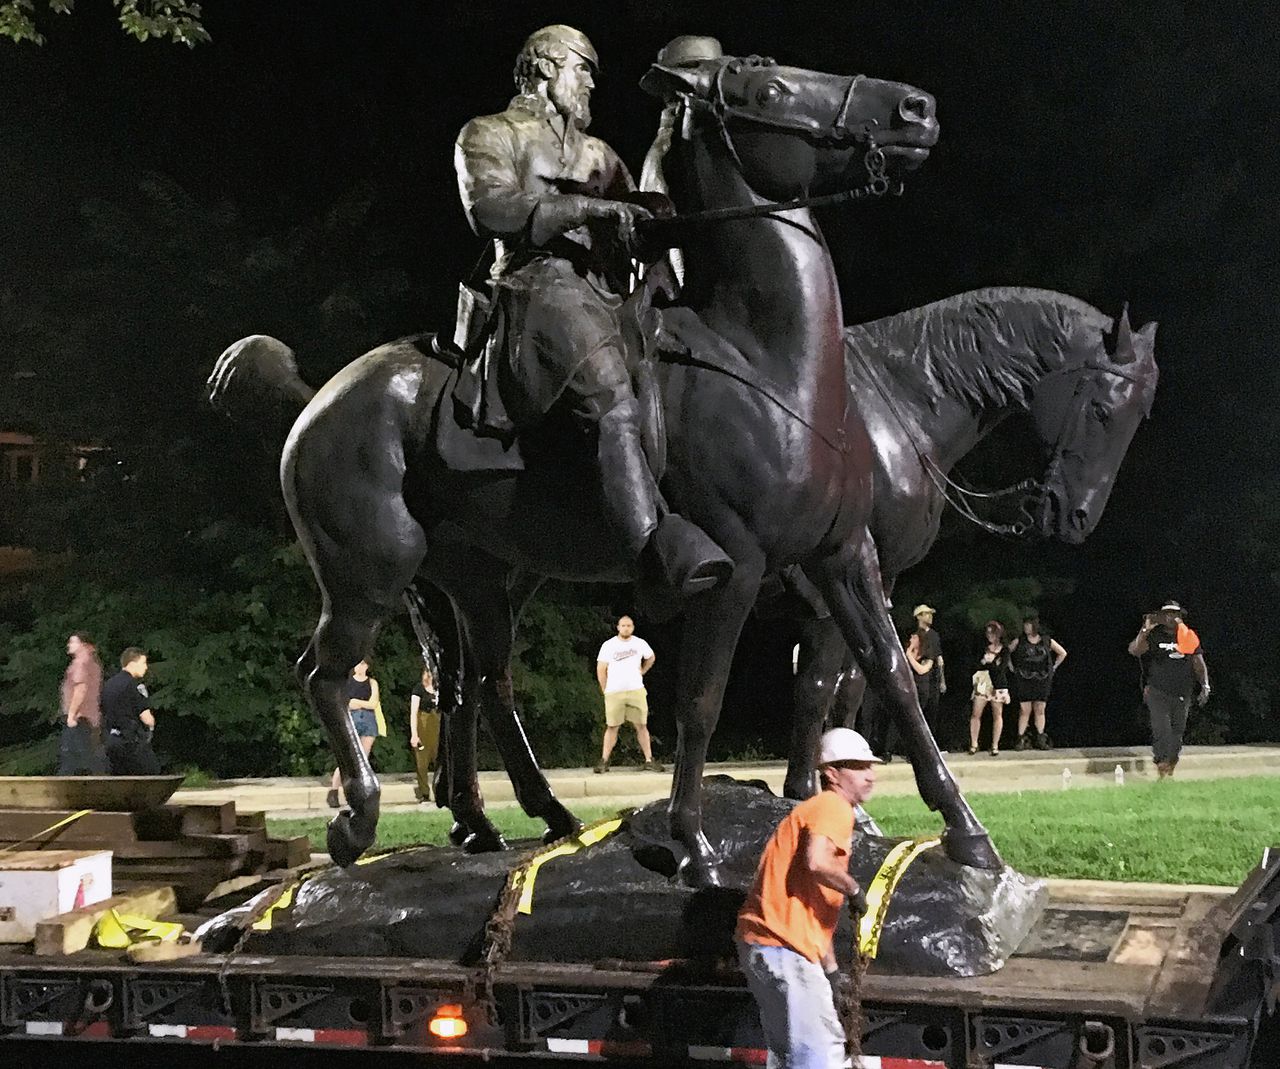 Het monument dat ter ere van Robert E. Lee en Thomas 'Stonewall' Jackson was geplaatst, wordt weggehaald.